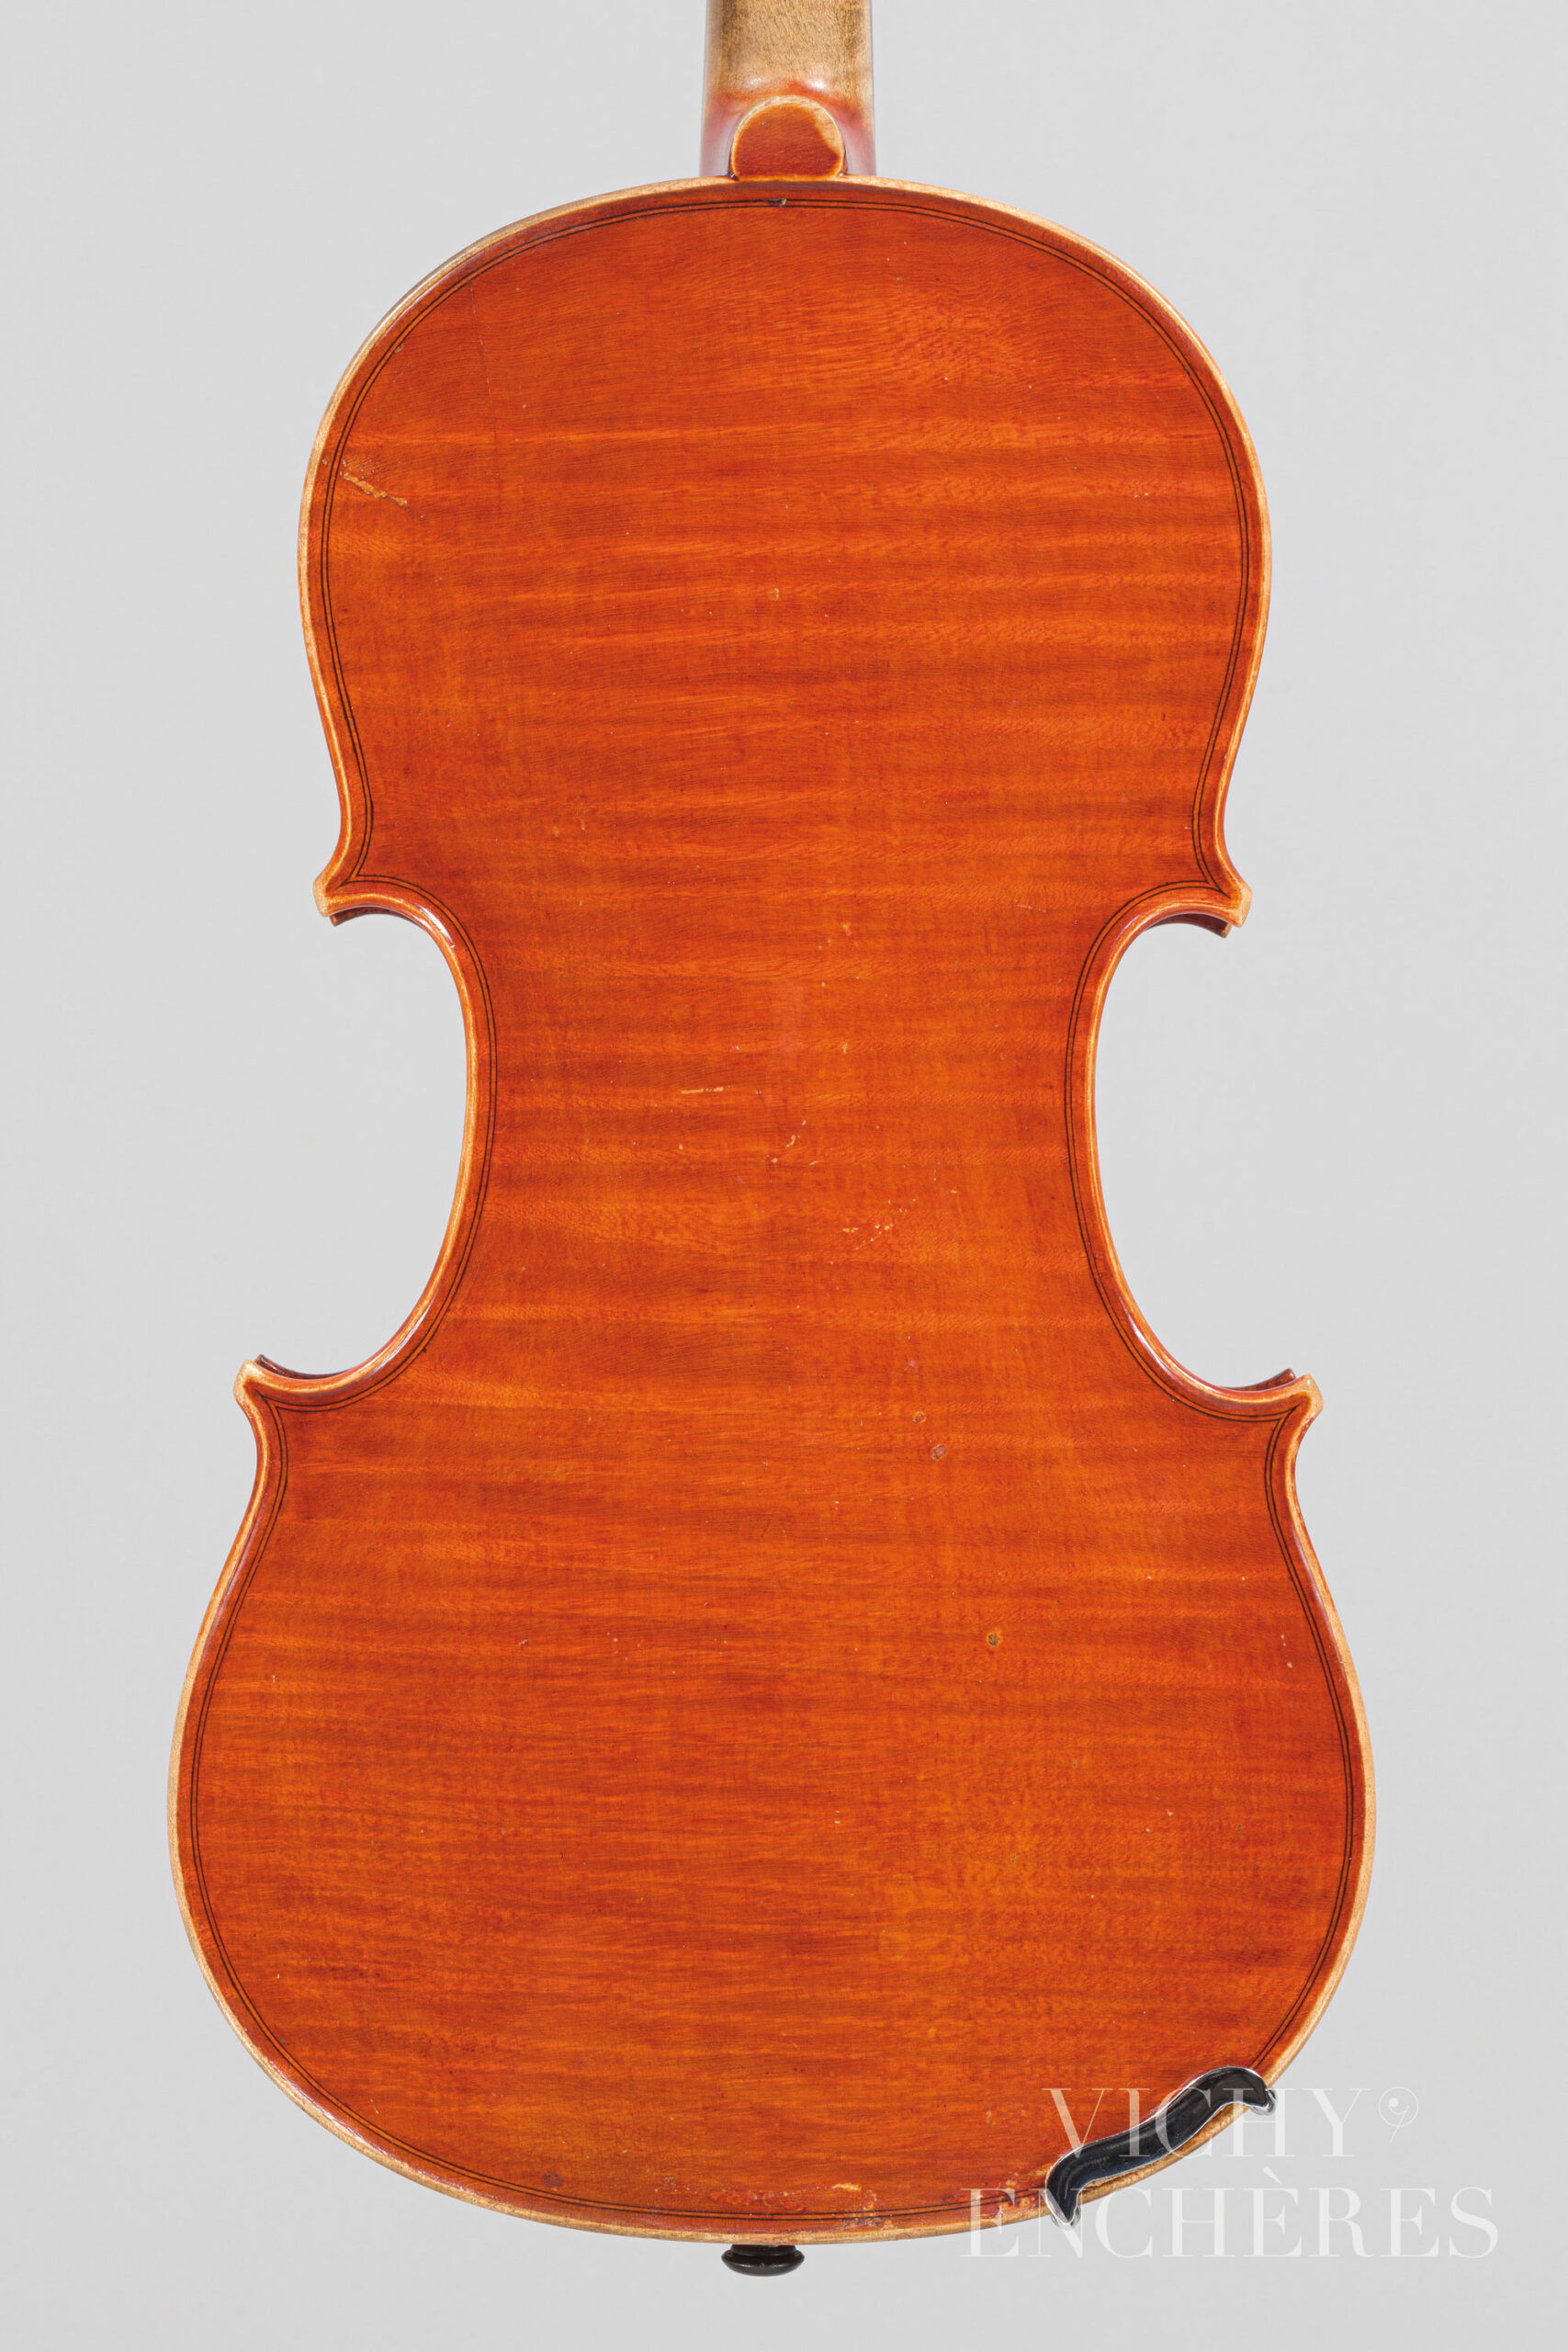 Violon de Cesare CANDI Instrument mis en vente par Vichy Enchères le 1er décembre 2022 © Christophe Darbelet